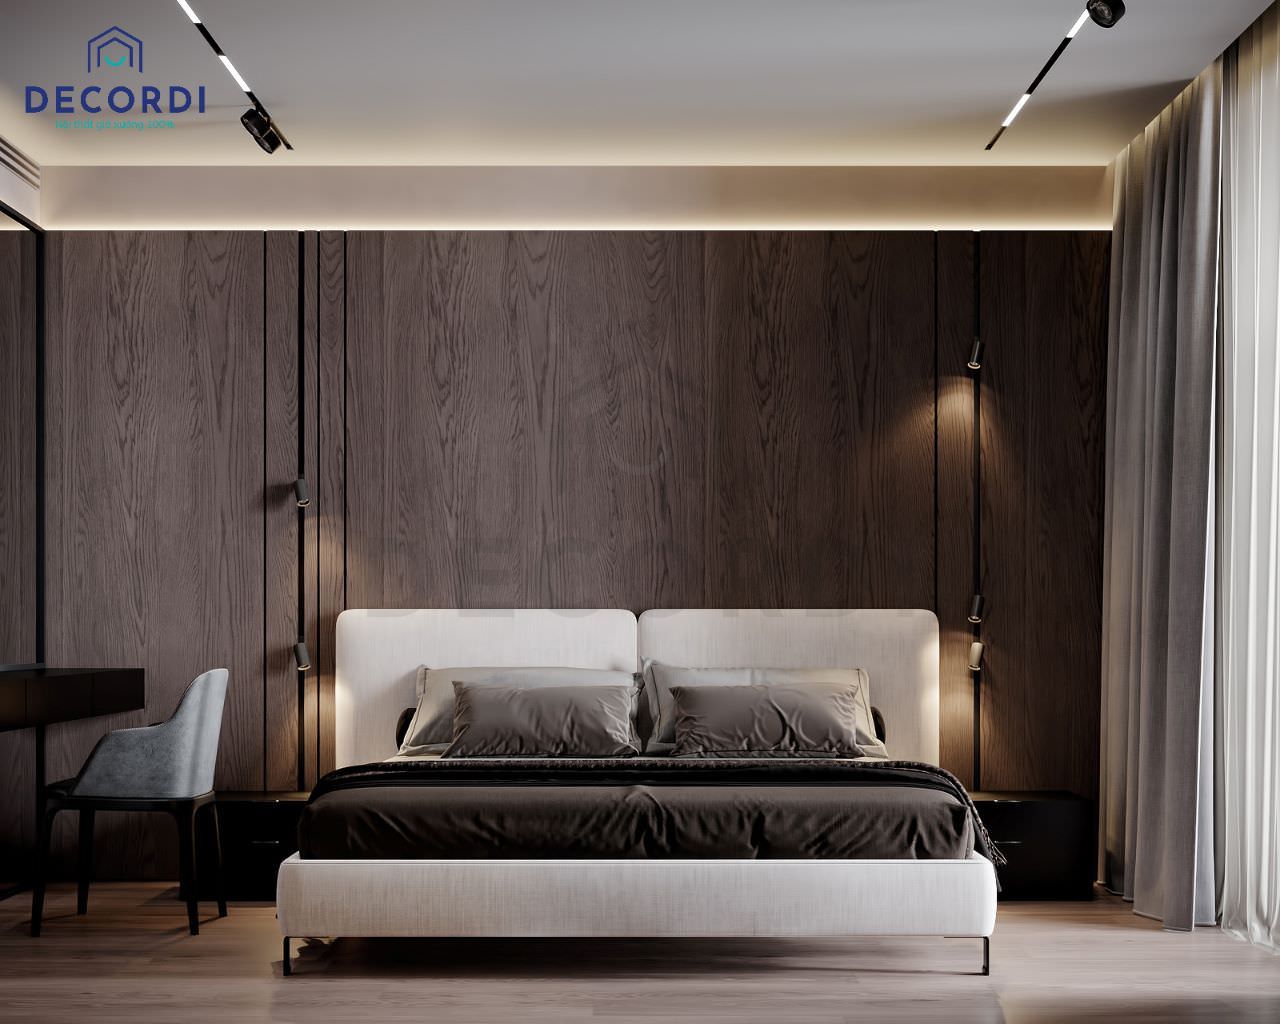 Trang trí phòng ngủ phong cách Minimalism với bộ nội thất đơn giản